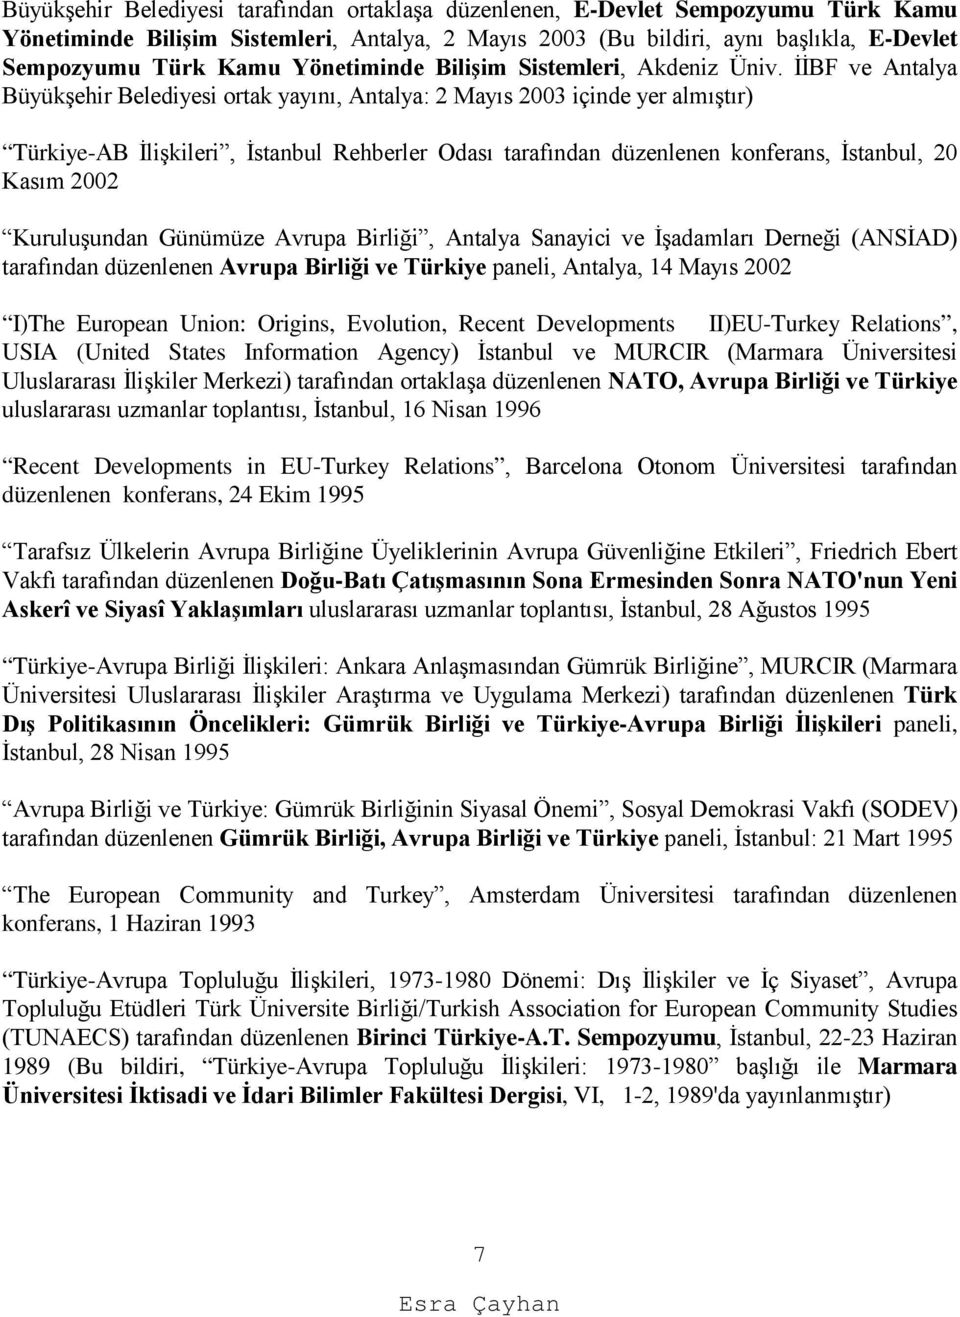 İİBF ve Antalya Büyükşehir Belediyesi ortak yayını, Antalya: 2 Mayıs 2003 içinde yer almıştır) Türkiye-AB İlişkileri, İstanbul Rehberler Odası tarafından düzenlenen konferans, İstanbul, 20 Kasım 2002